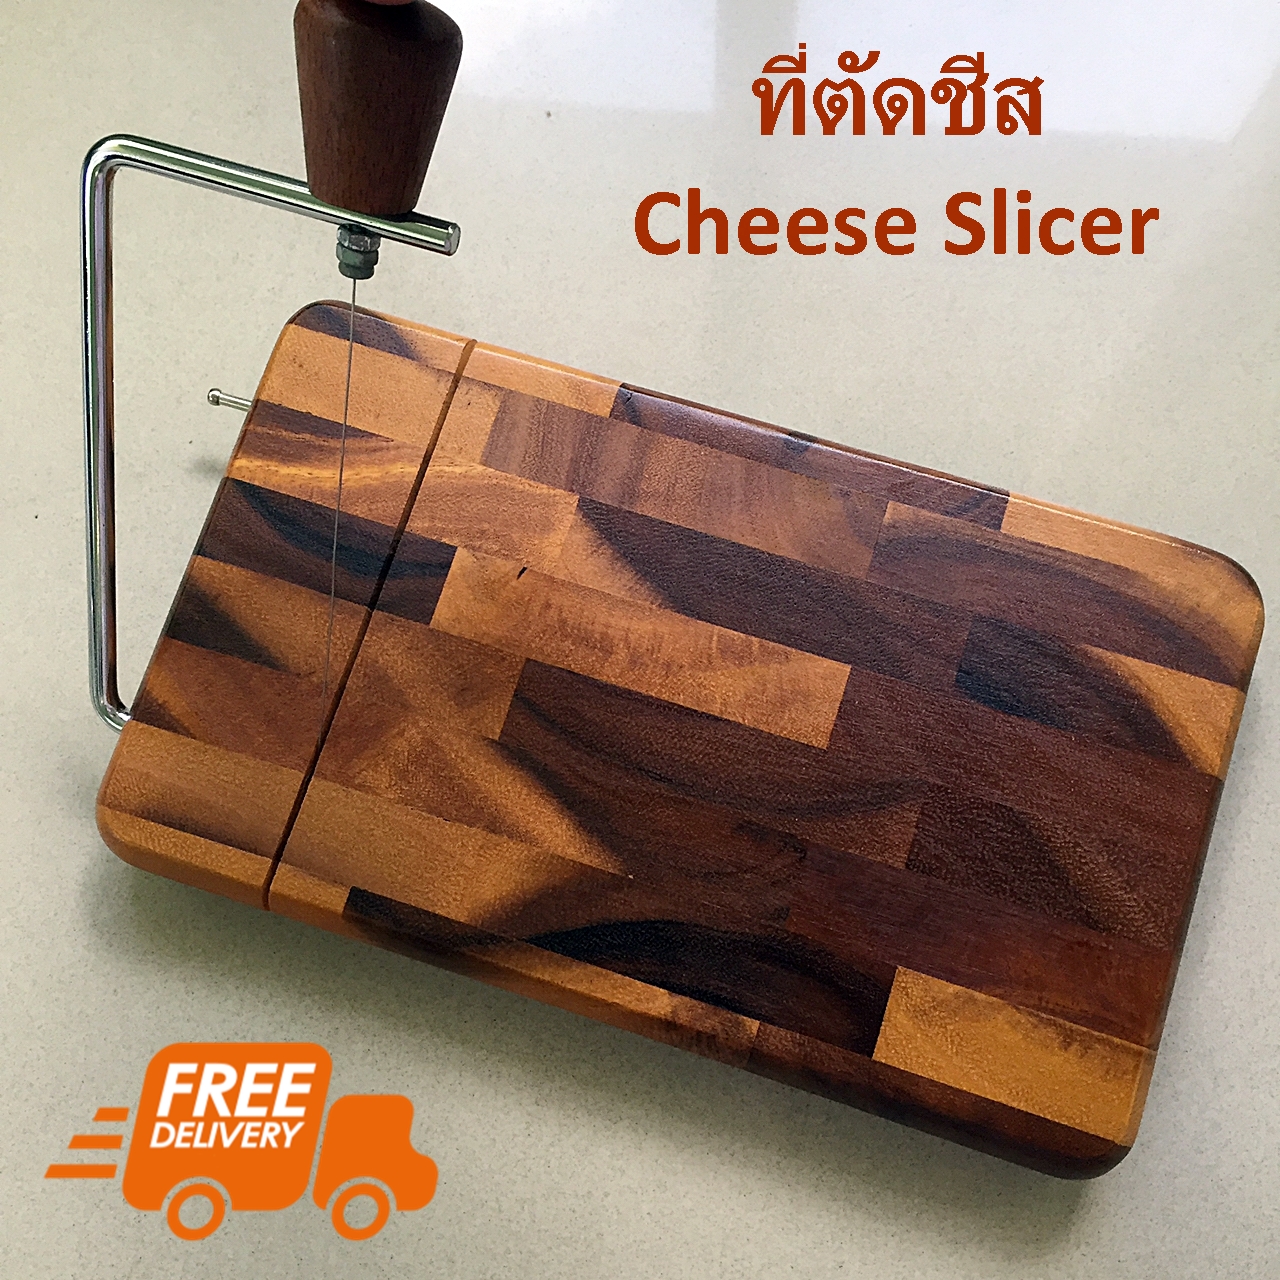 ที่ตัดชีส แผ่นรอง ตัด ชีส เนยแข็ง ที่ตัดชีส แผ่นรอง ตัดชีส เบเกอรี่ Cheese Slicer Board Butter Dessert Food Cutter Wooden